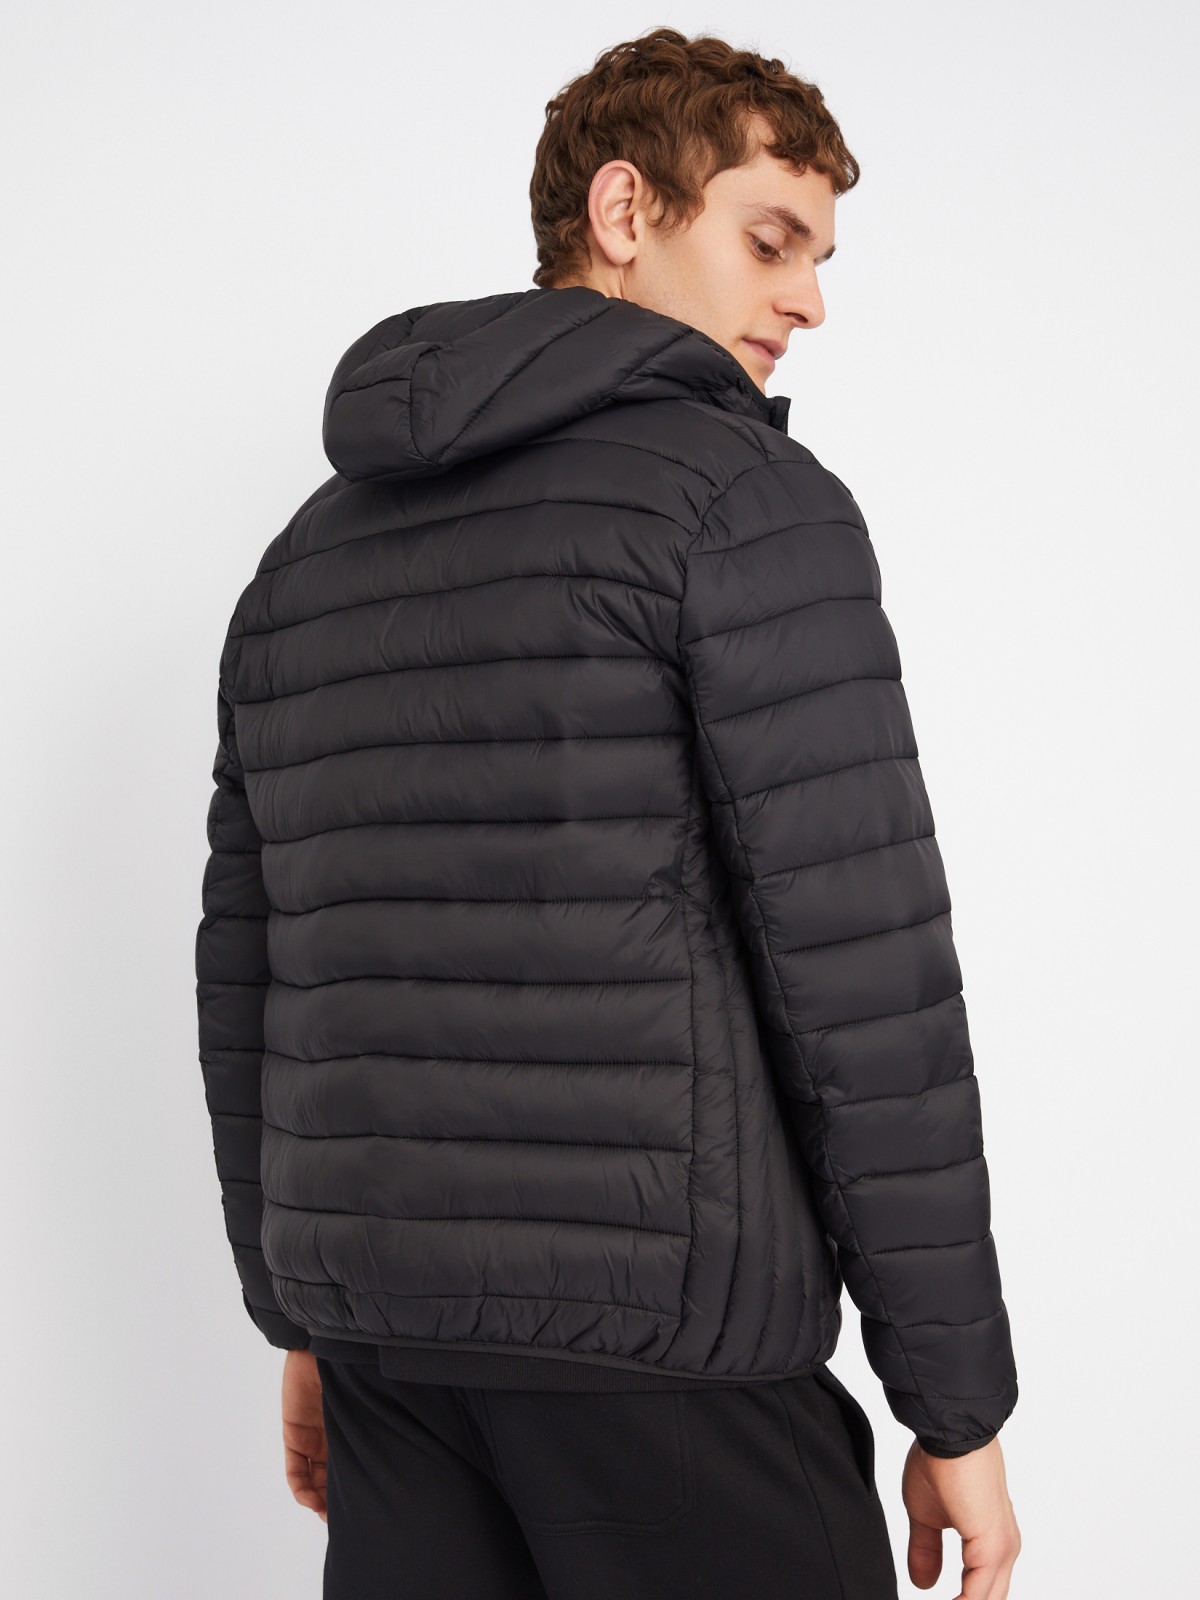 Лёгкая утеплённая стёганая куртка на молнии с капюшоном zolla 013335114014, цвет черный, размер S - фото 6